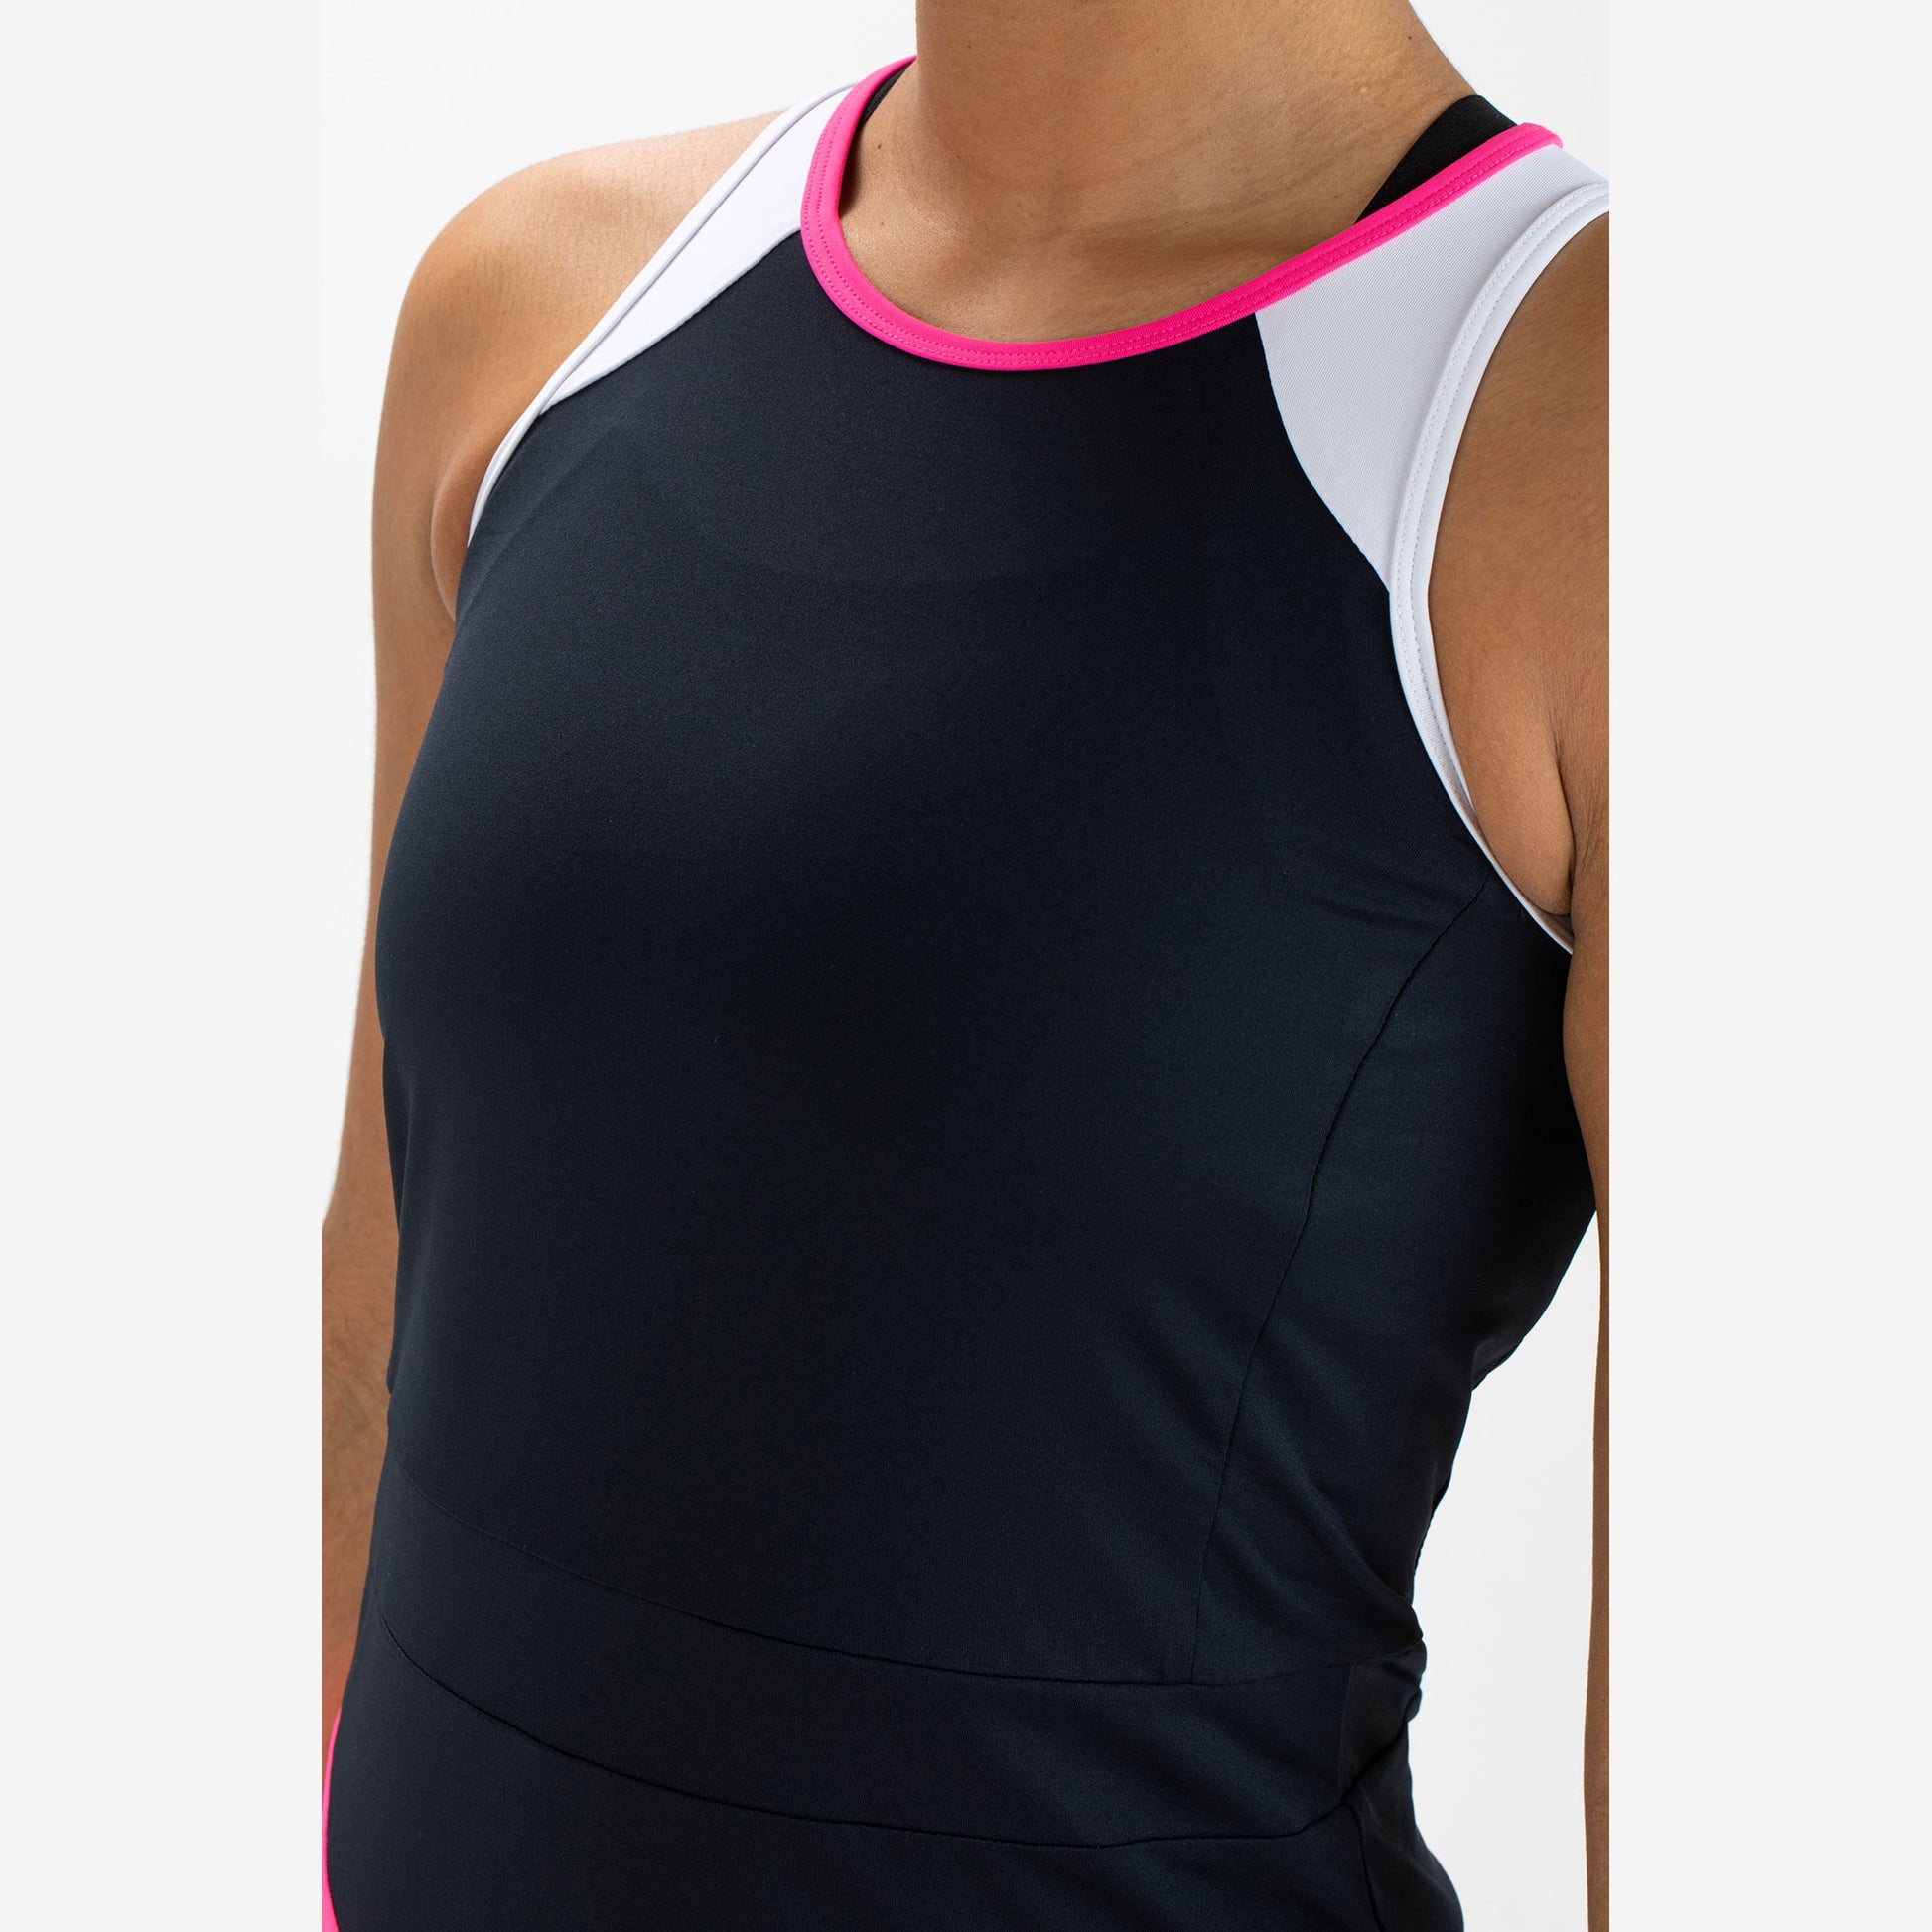 Sjeng Sports Elianne Women's Tennis Dress Pink (3)